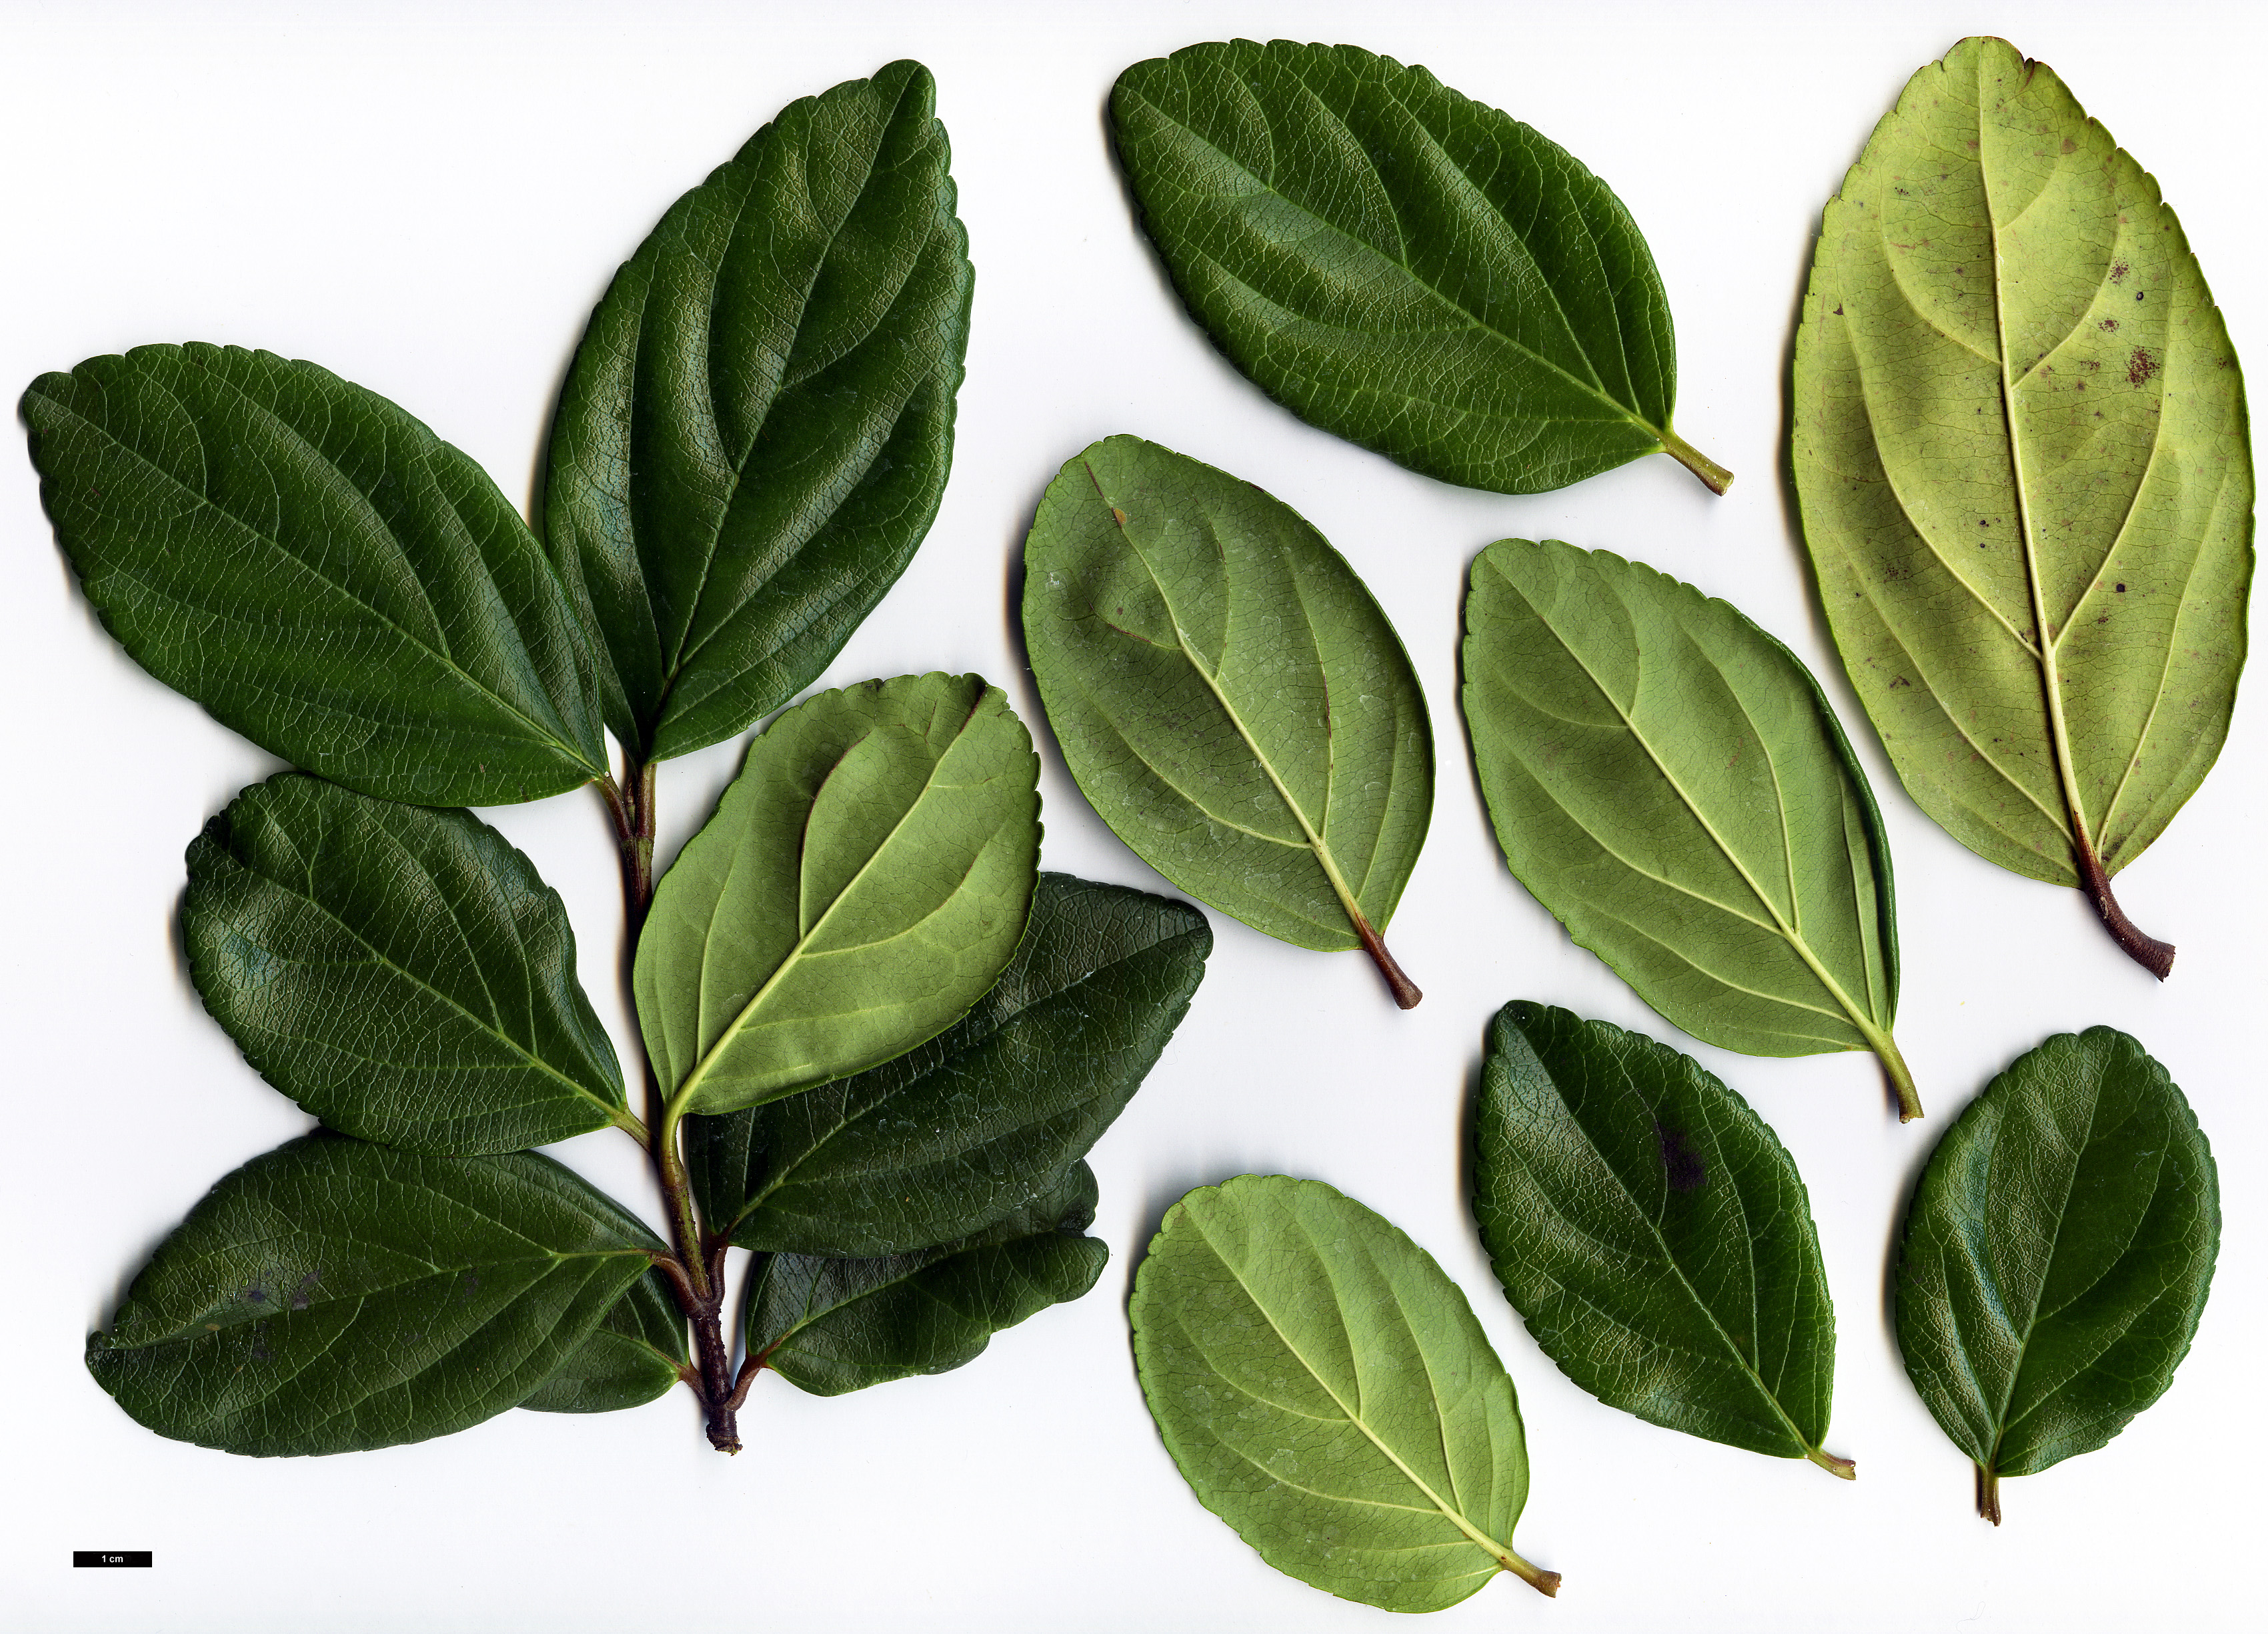 High resolution image: Family: Adoxaceae - Genus: Viburnum - Taxon: suspensum